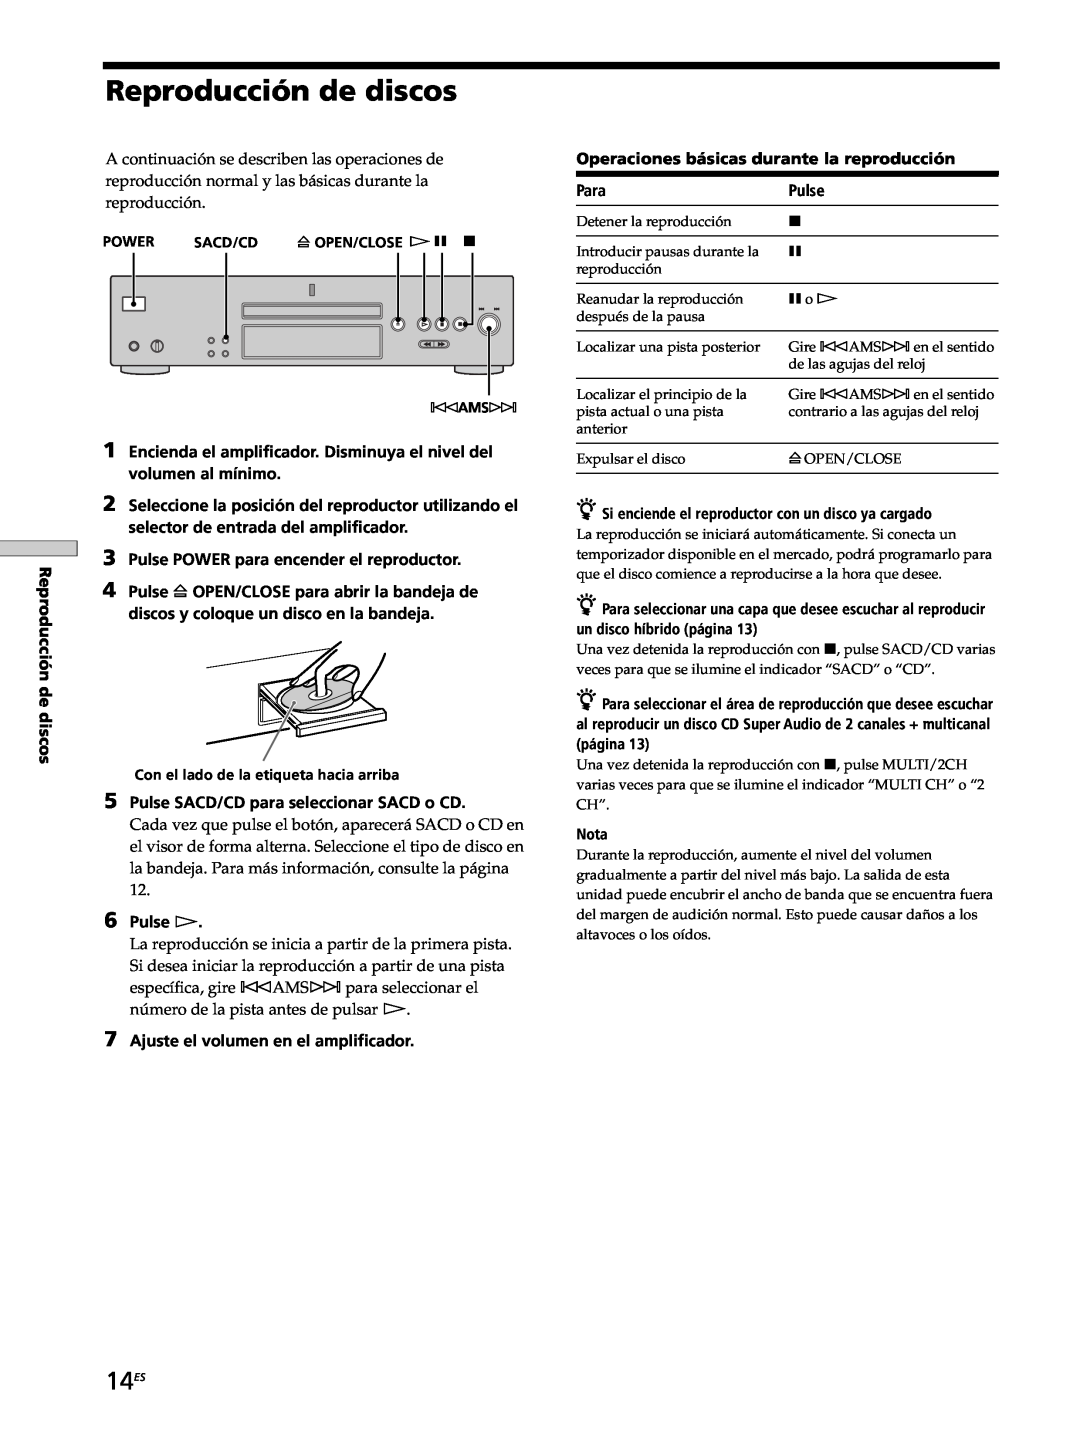 Sony SCD-XB770 operating instructions Reproducción de discos, 14ES 